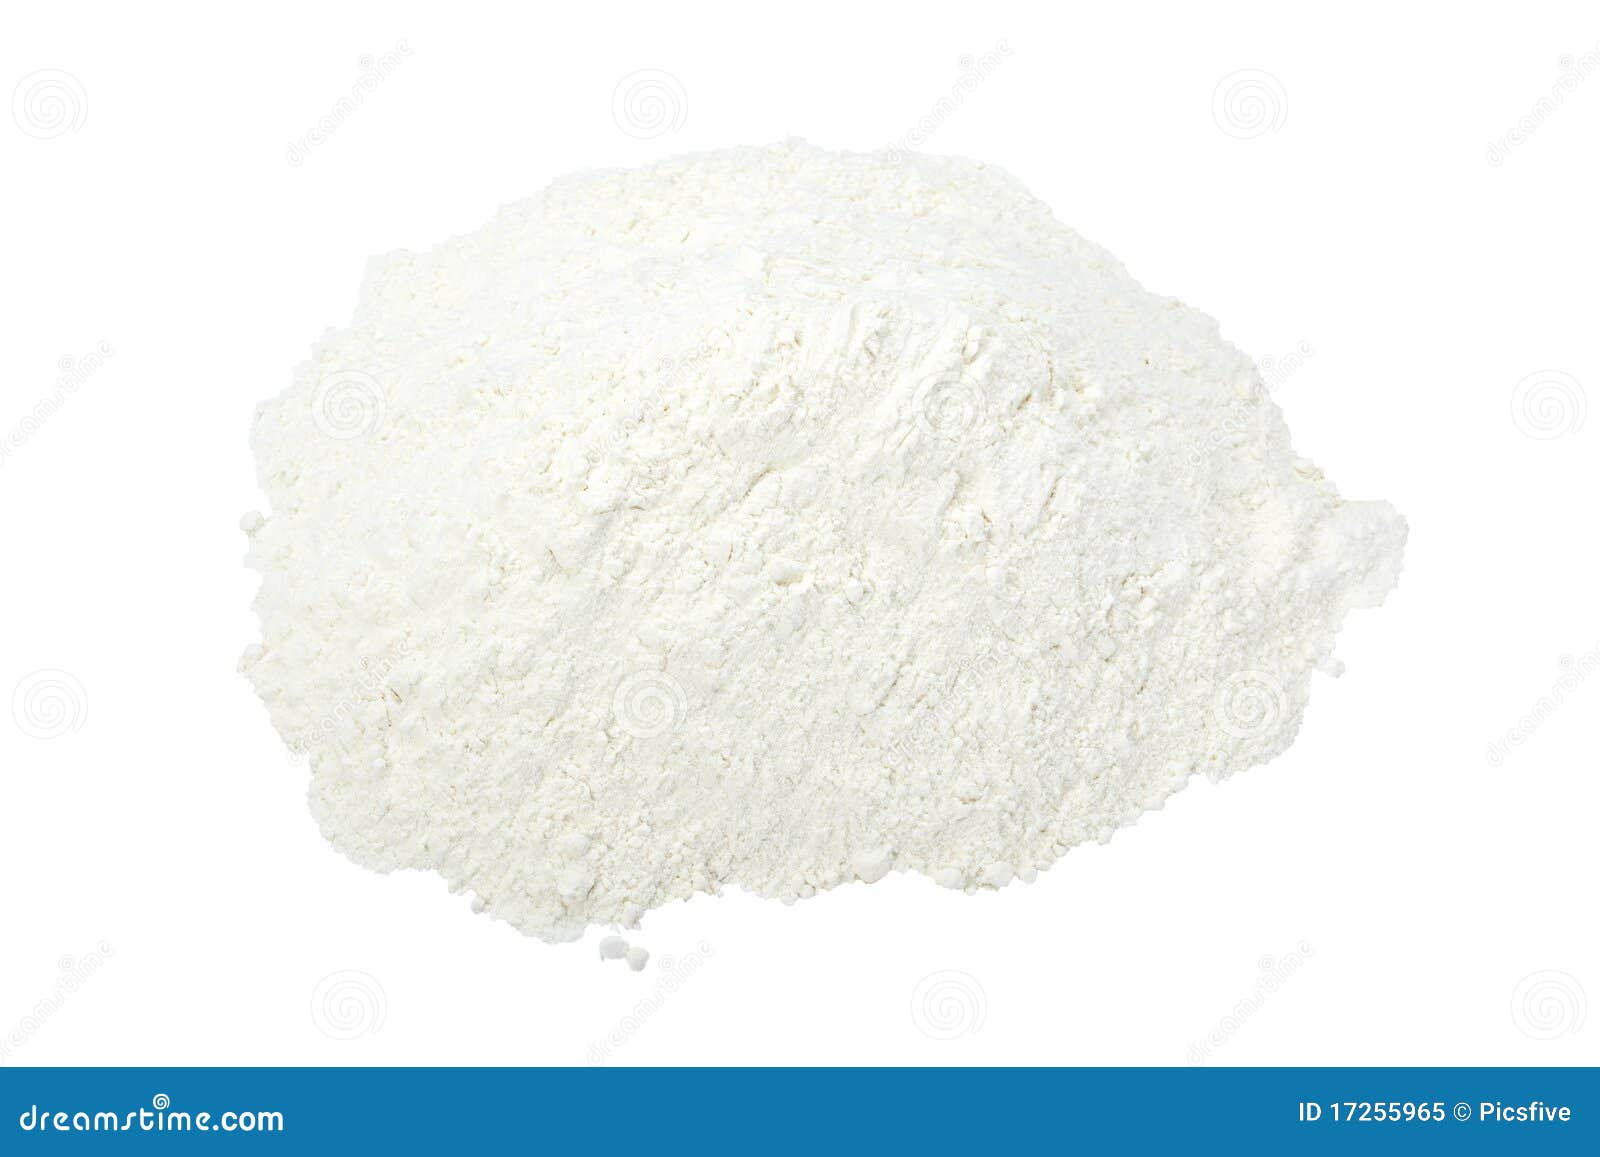 flour powder